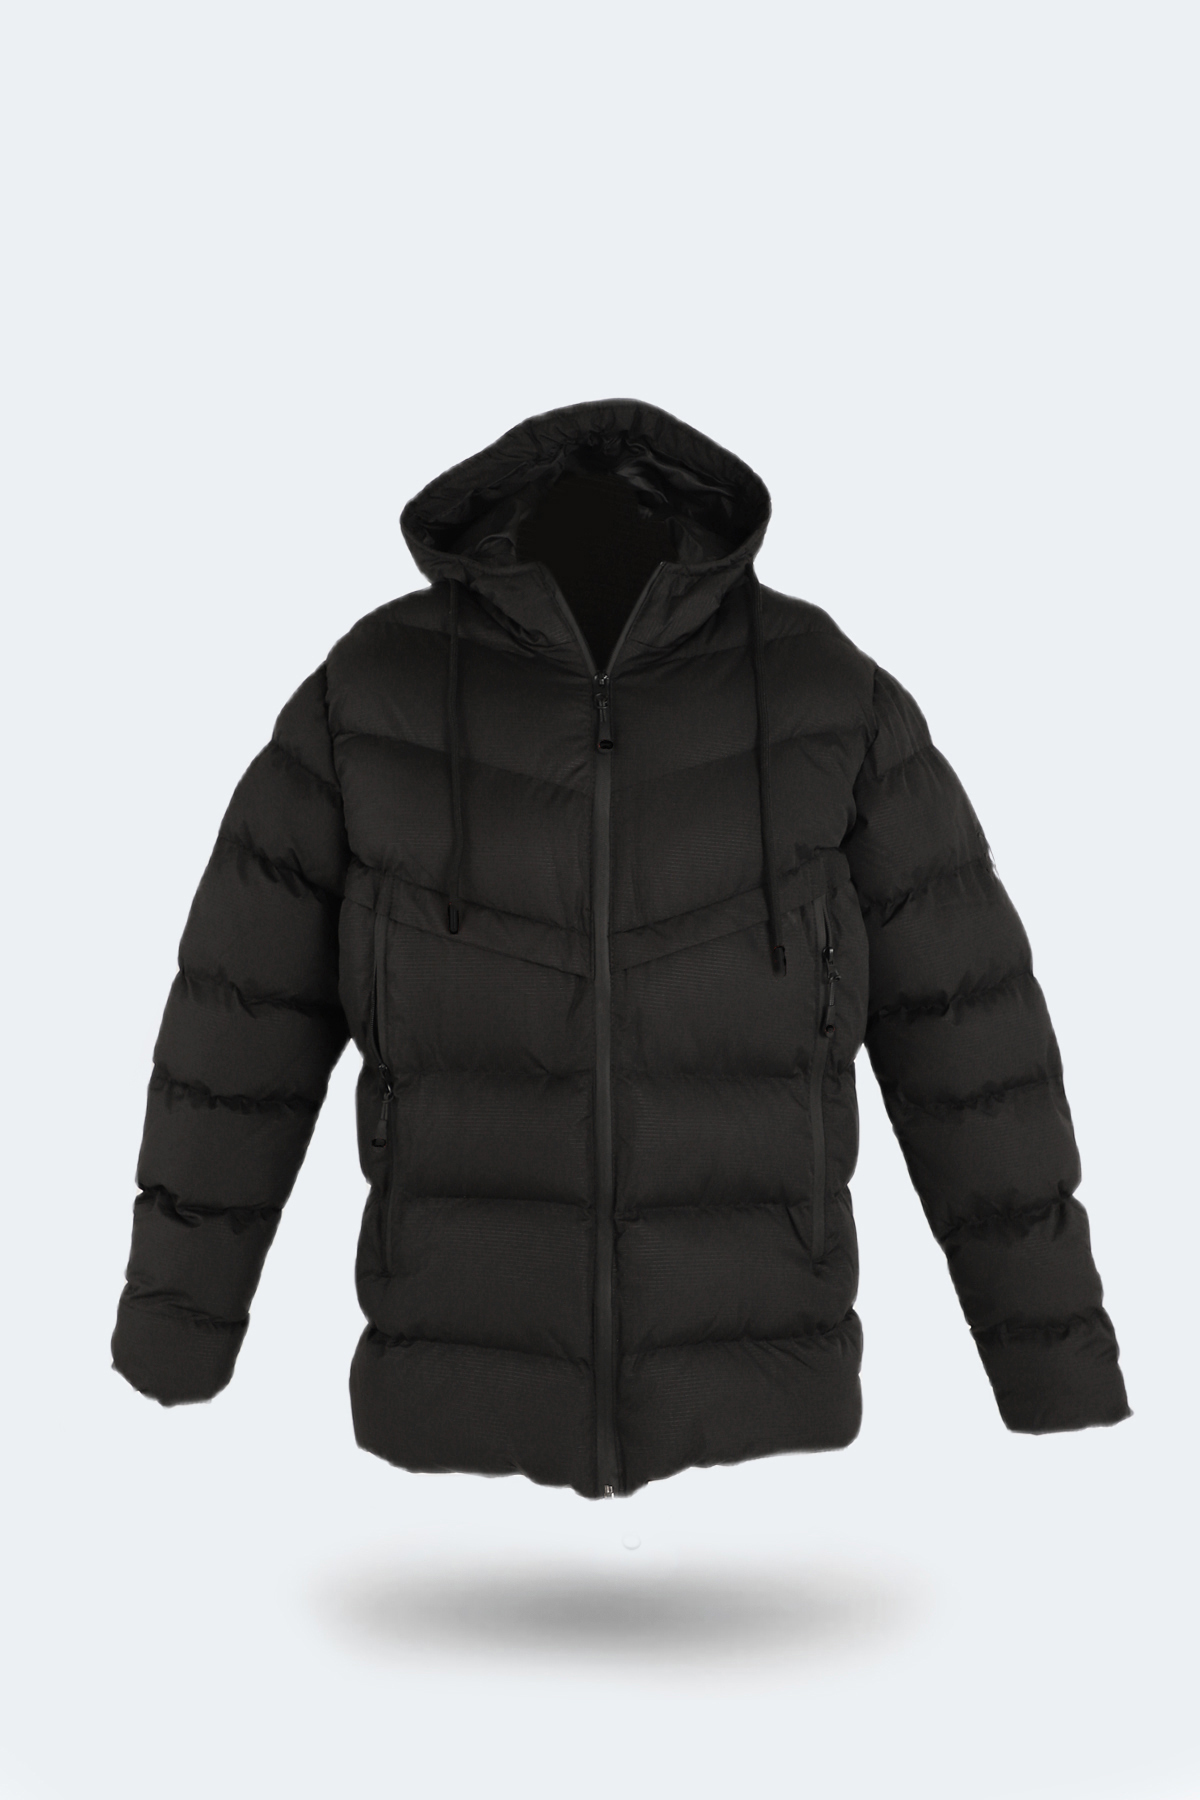 Levně Slazenger HAIFA Pánský kabát nadměrných velikostí černý